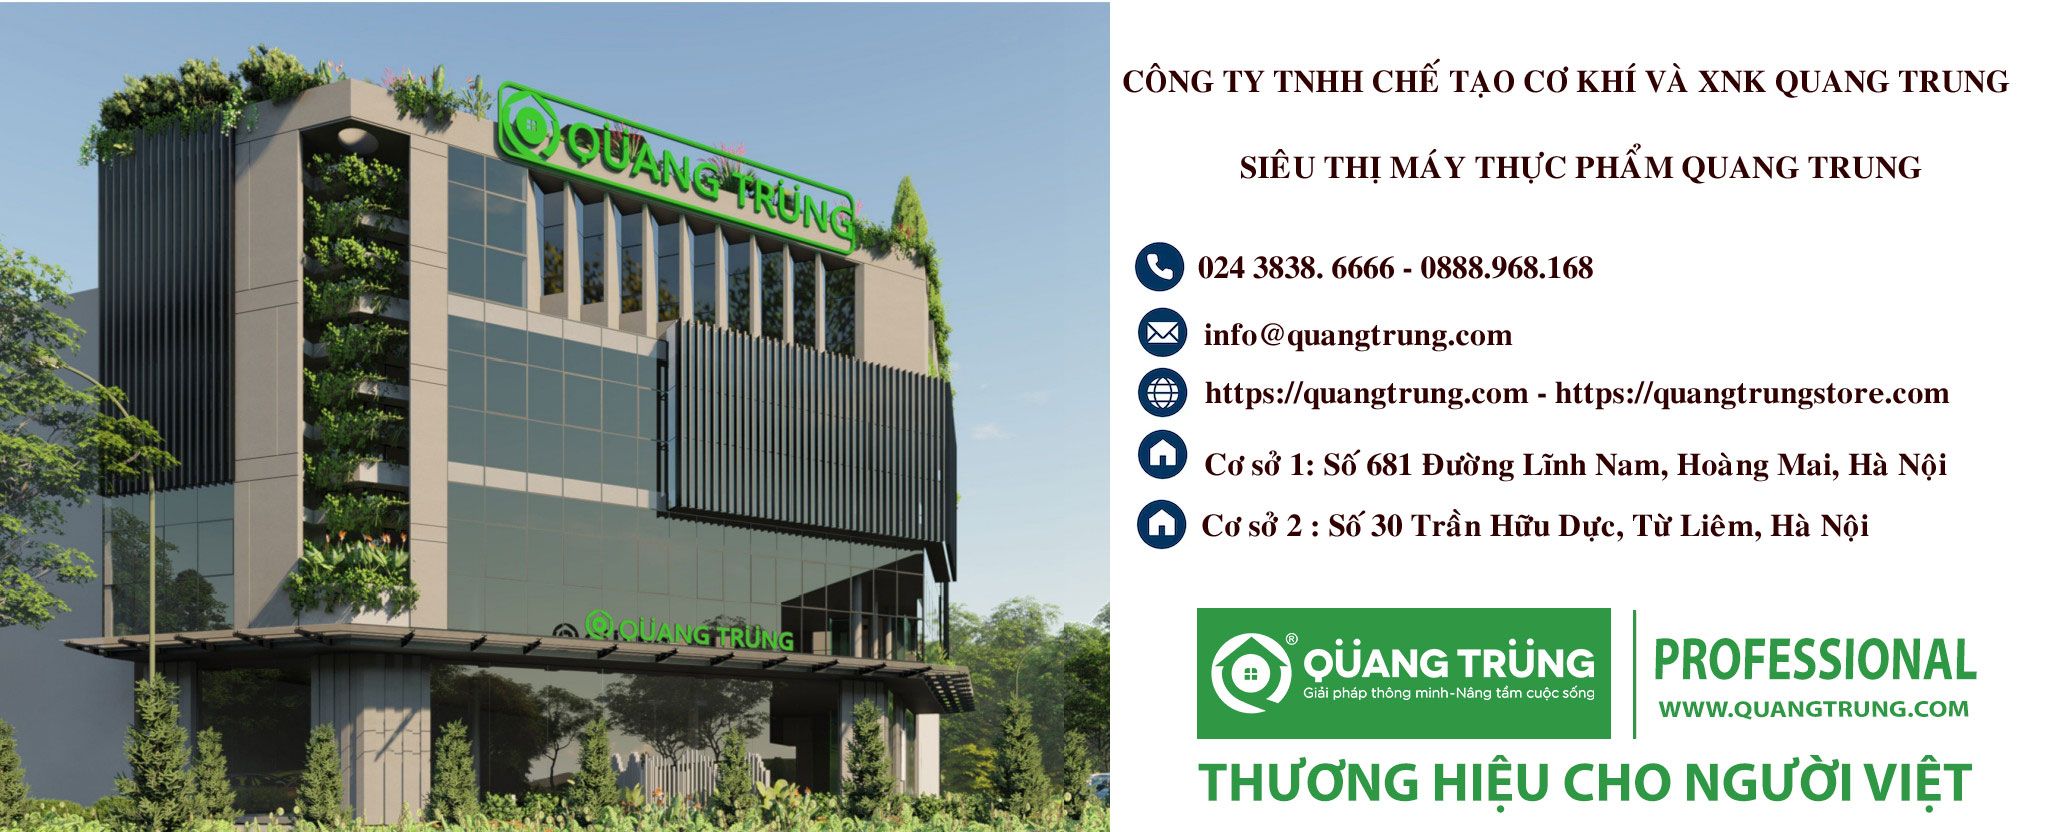 banner lien He sieu thi Quang Trung